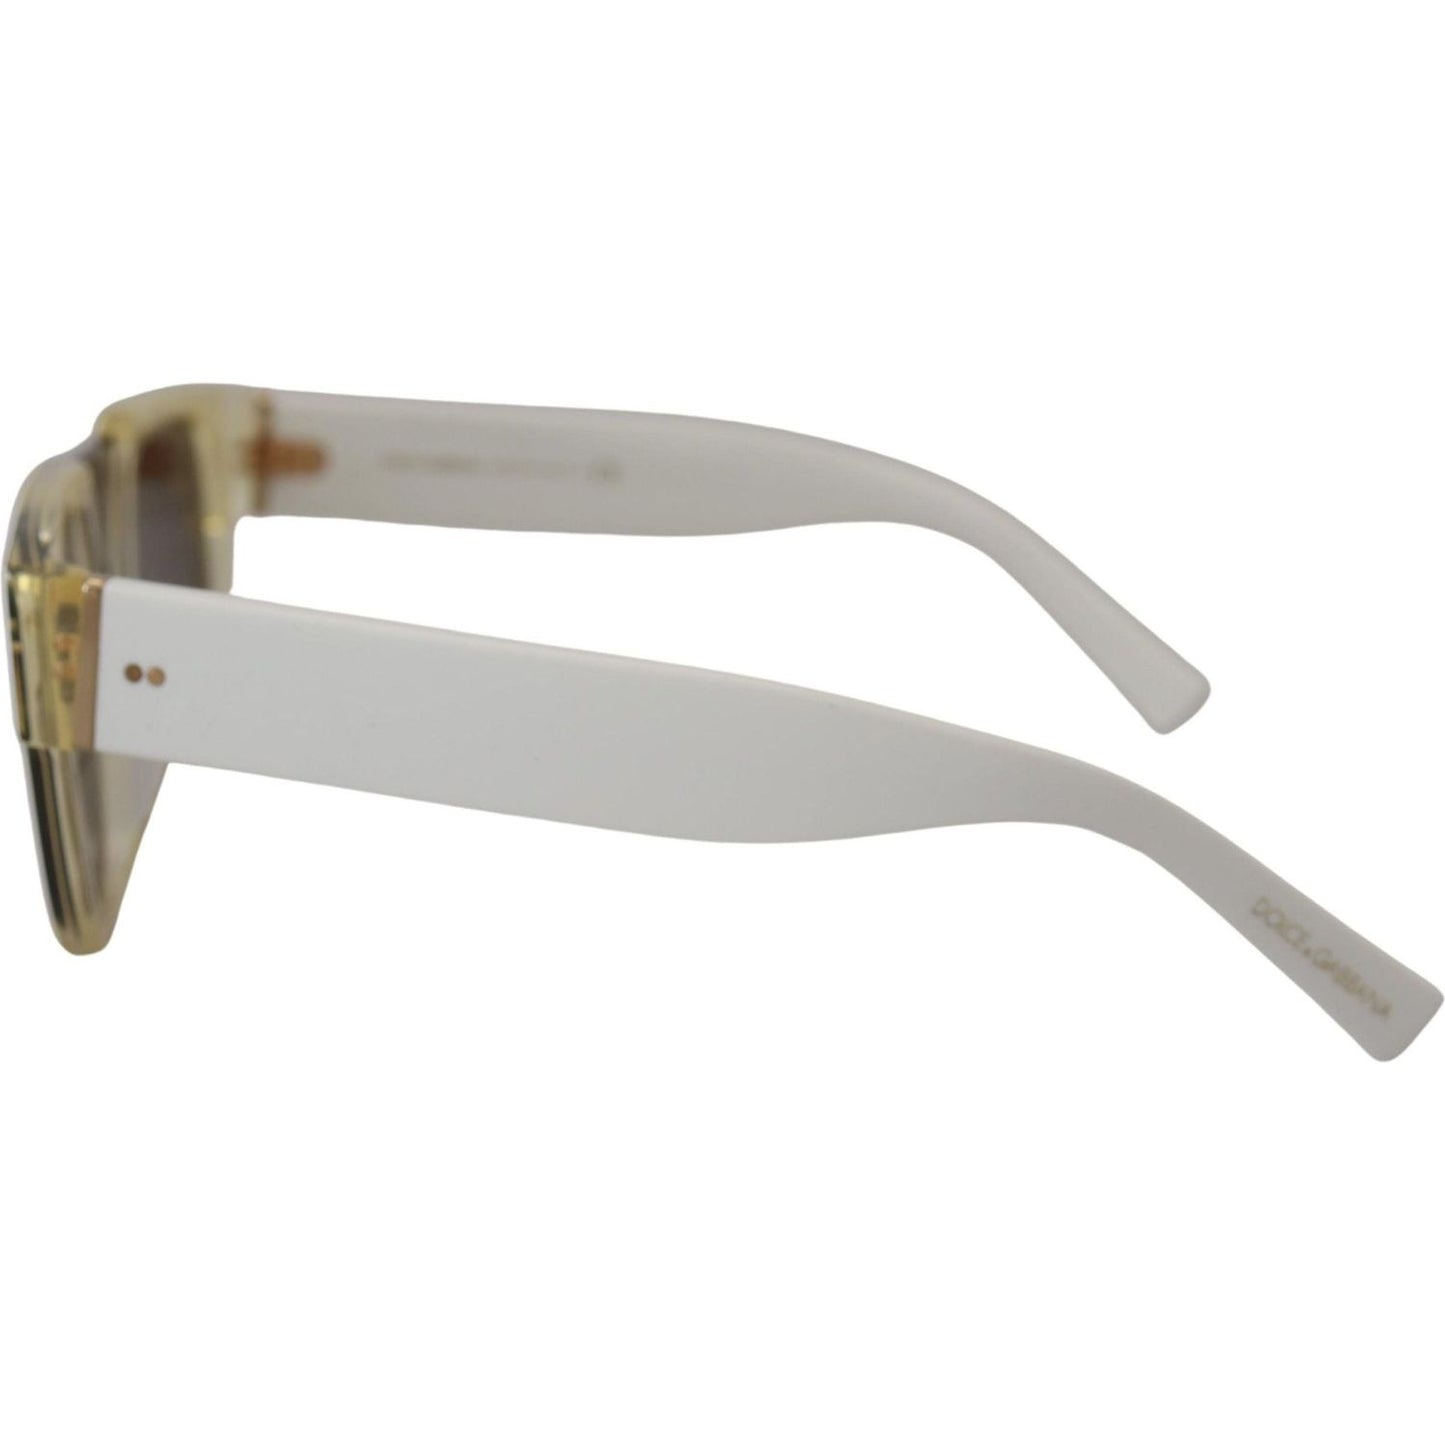 Dolce & Gabbana Elegant White Acetate Sunglasses for Women white-acetate-full-rim-frame-shades-dg4356f-sunglasses IMG_4037-scaled-c1850768-789.jpg